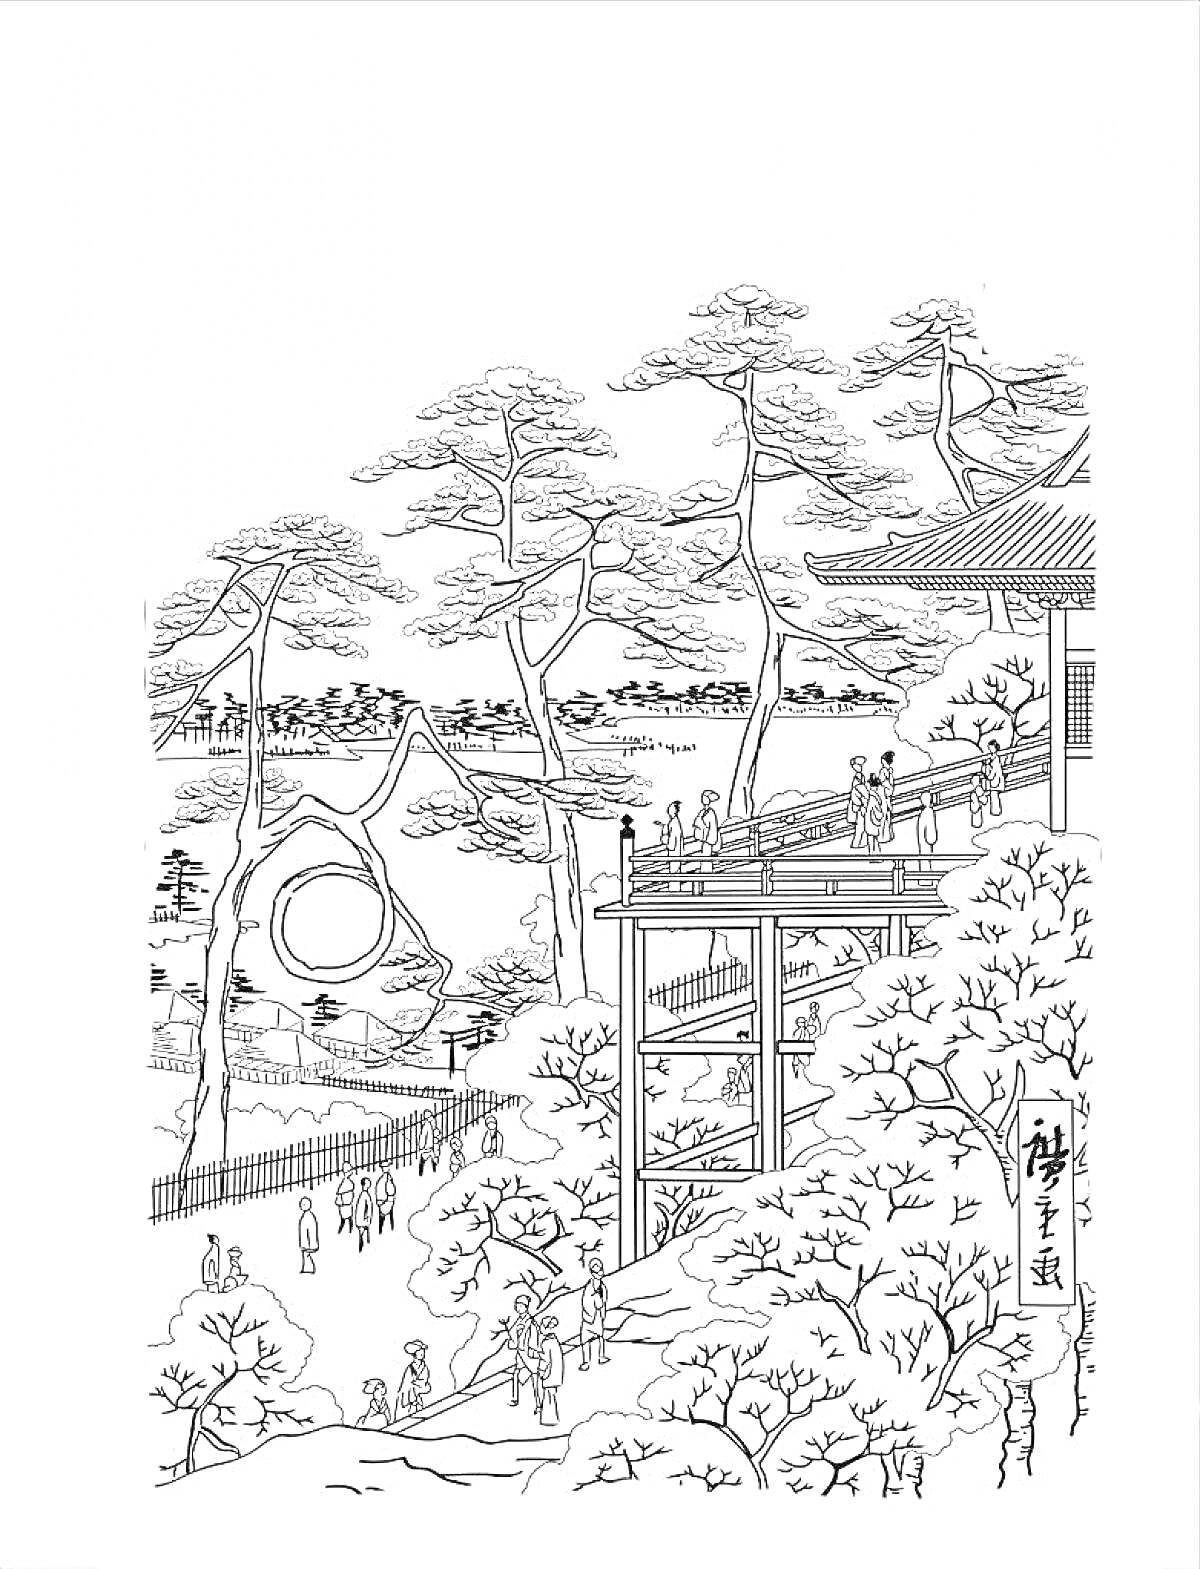 Японский пейзаж с храмом, деревянным мостом, деревьями и гуляющими людьми